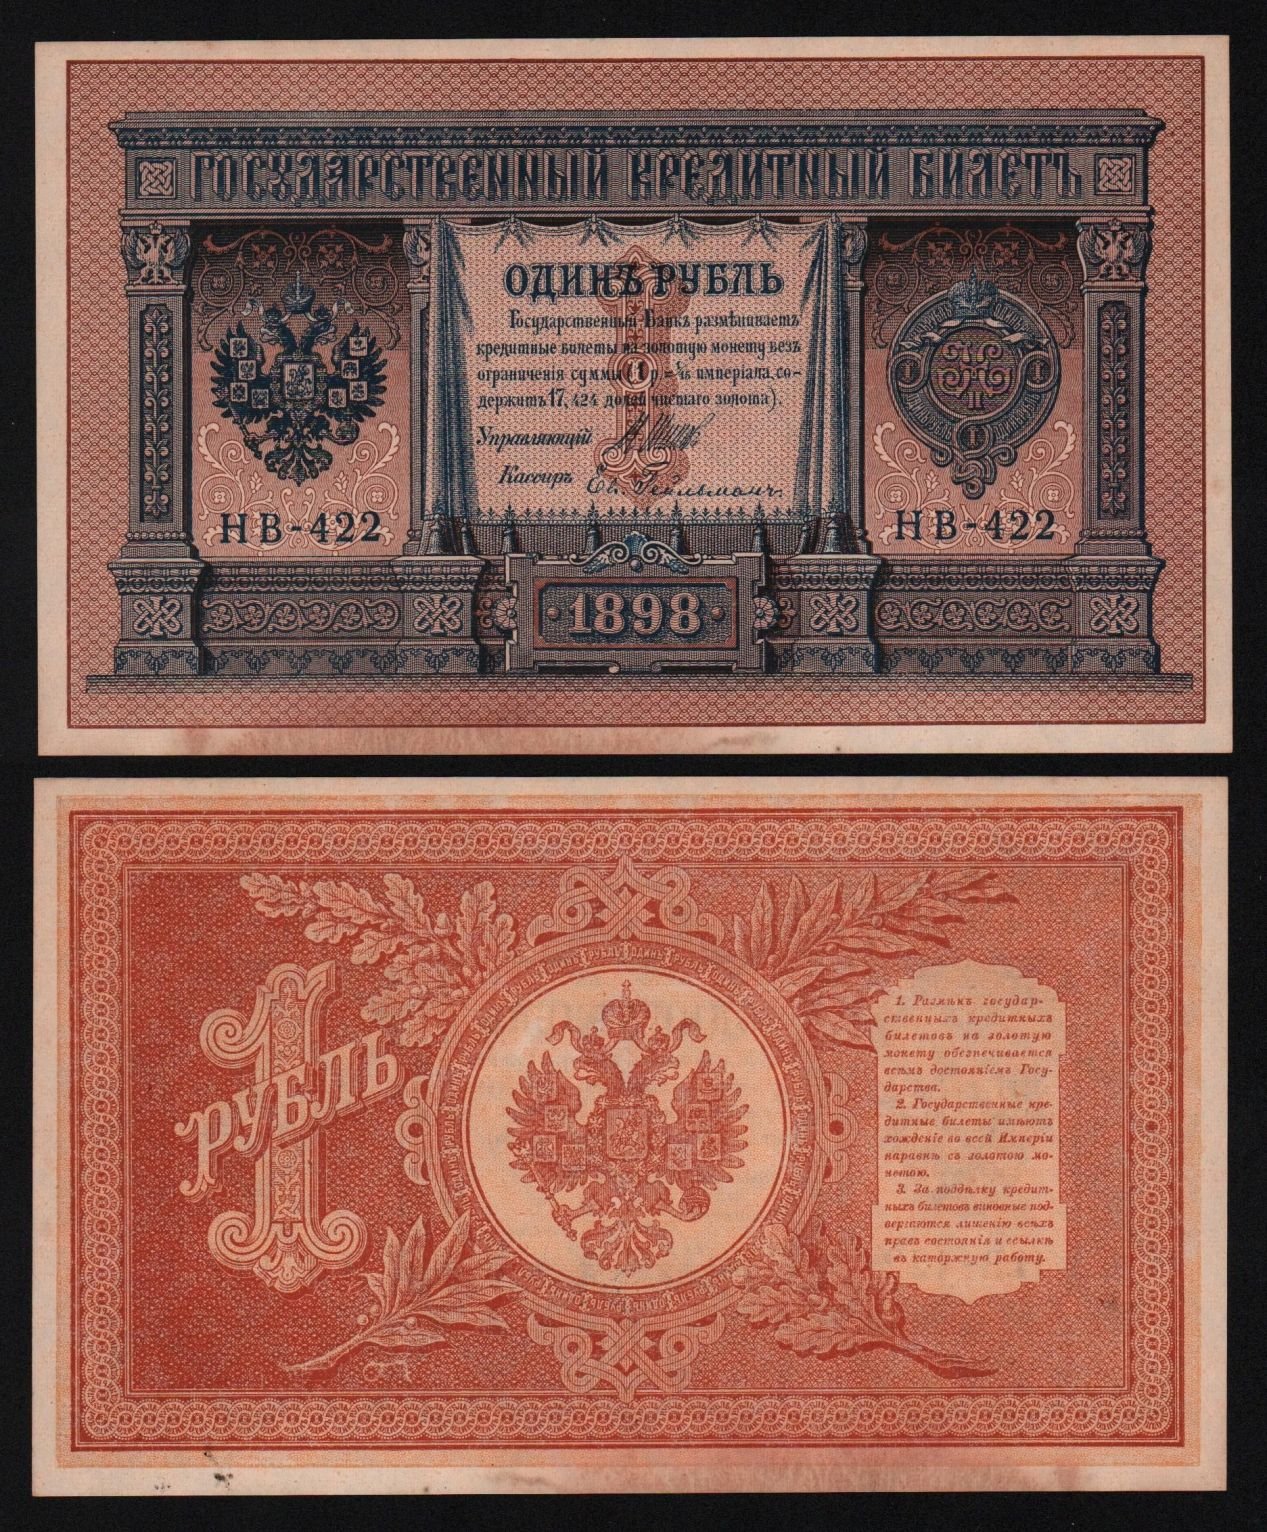 Купить 1 РУБЛЬ 1898 год ГЕЙЛЬМАН НВ-422, aUNC! (8)